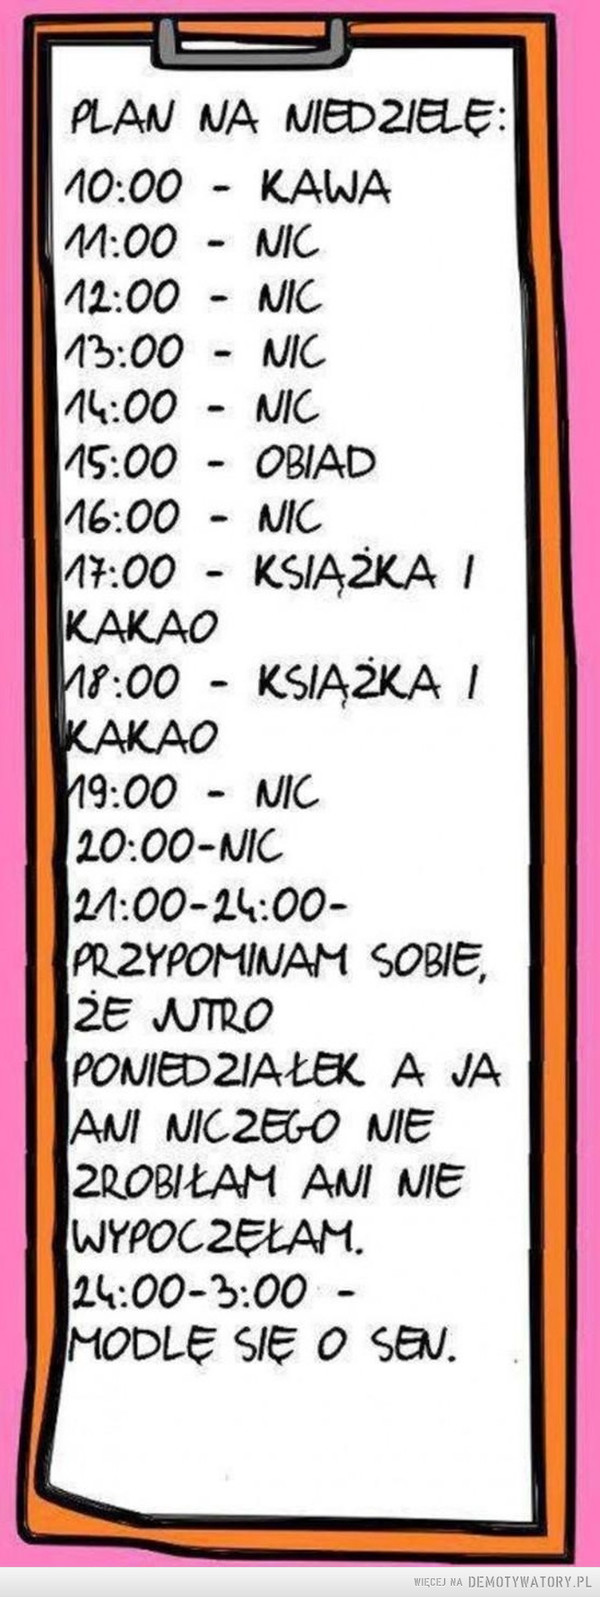 Plan na niedzielę –  PLAN NA NIEDZIELĘ:10:00 KAWA11:00 NIC12:00 NIC13:00 NIC14:00 NIC15:00 OBIAD16:00 NIC